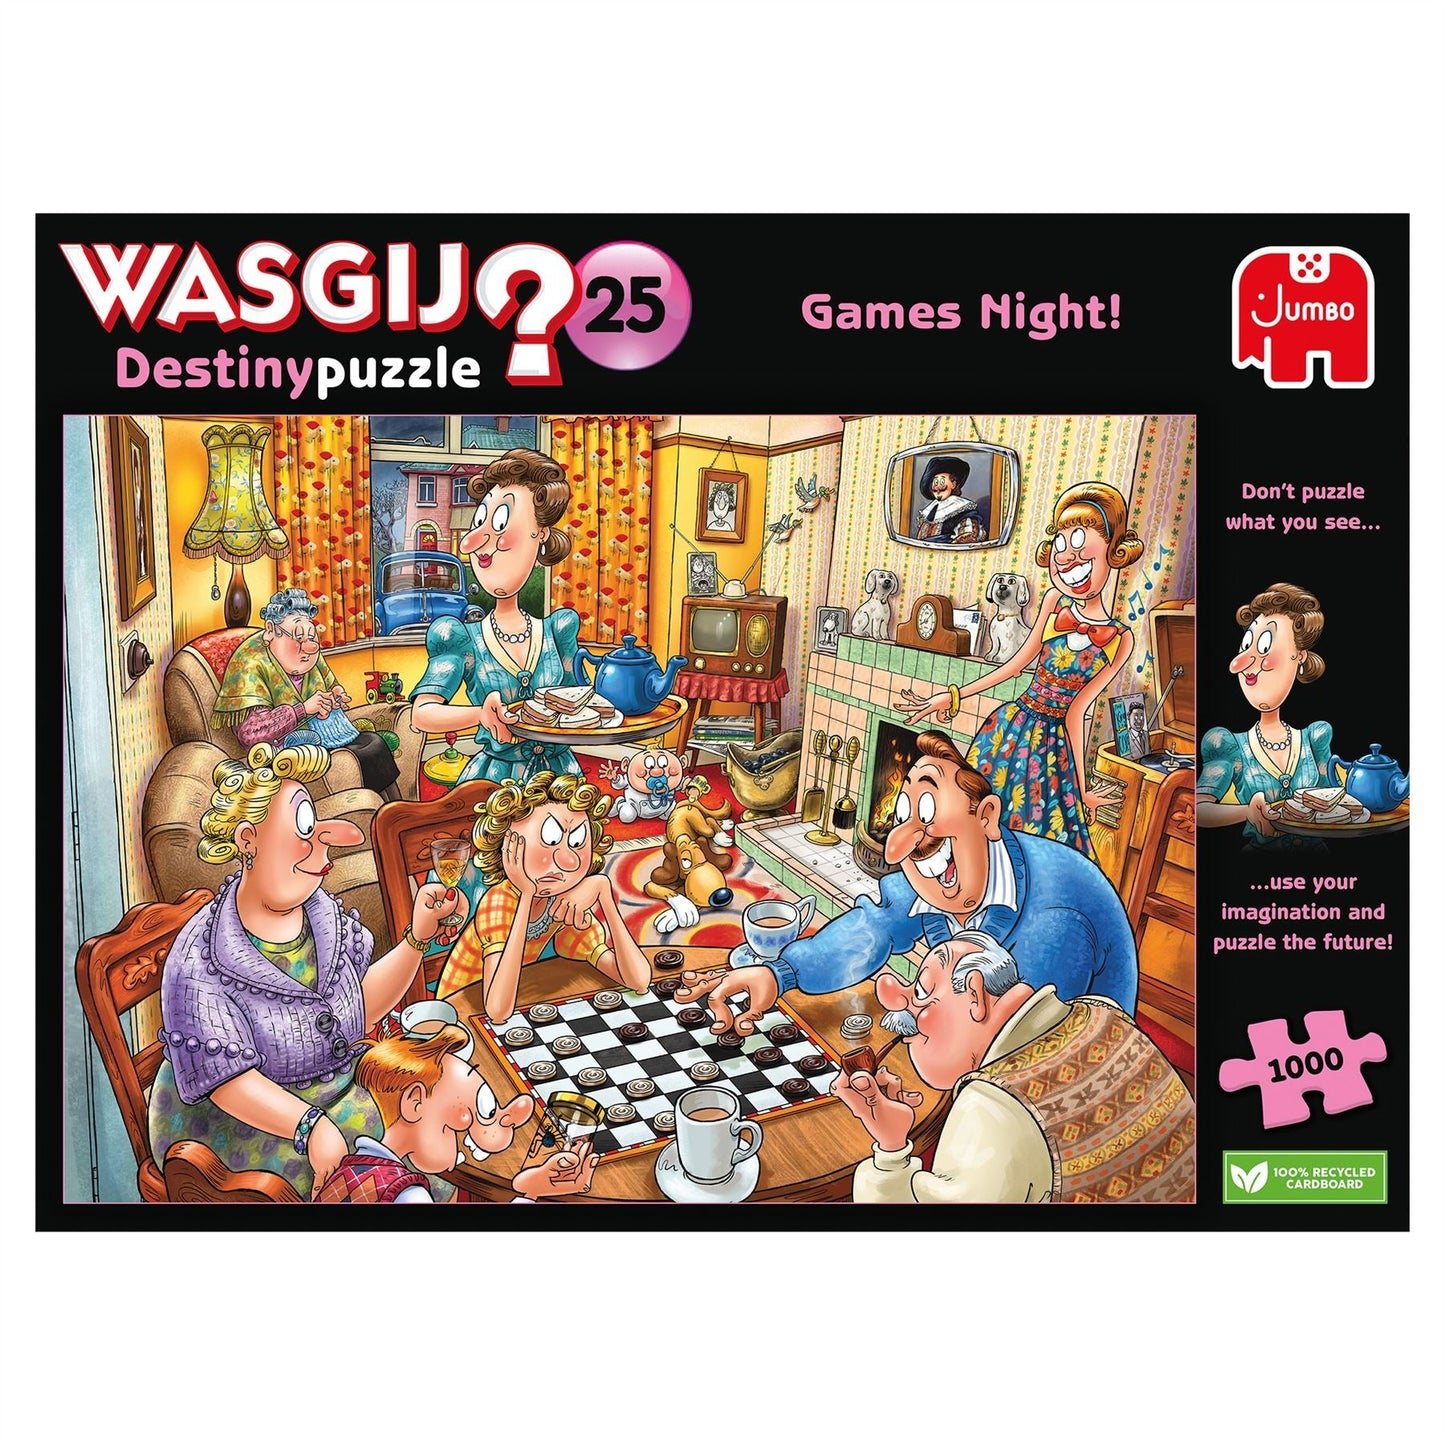 Wasgij Destiny 25 Games Night! 1000 Piece Jigsaw Puzzle